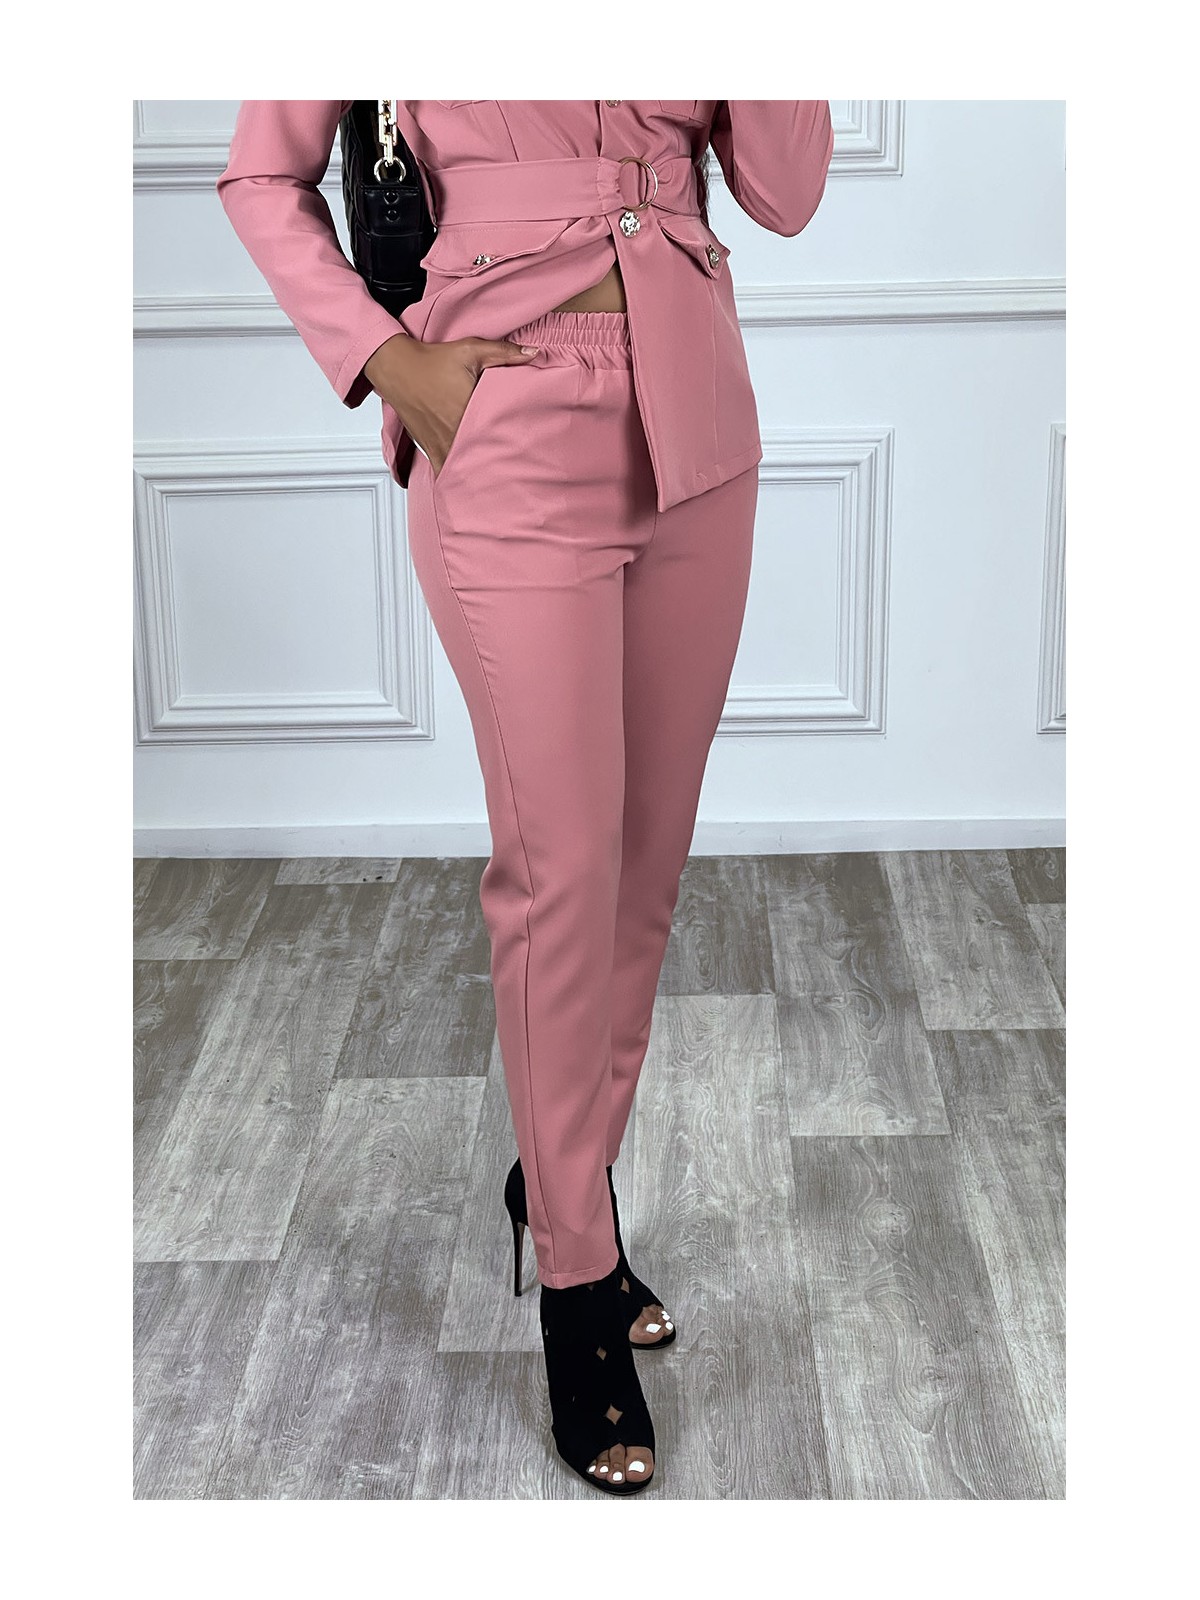 EnPEmble tailleur rose veste et pantalon avec ceinture réglable - 6